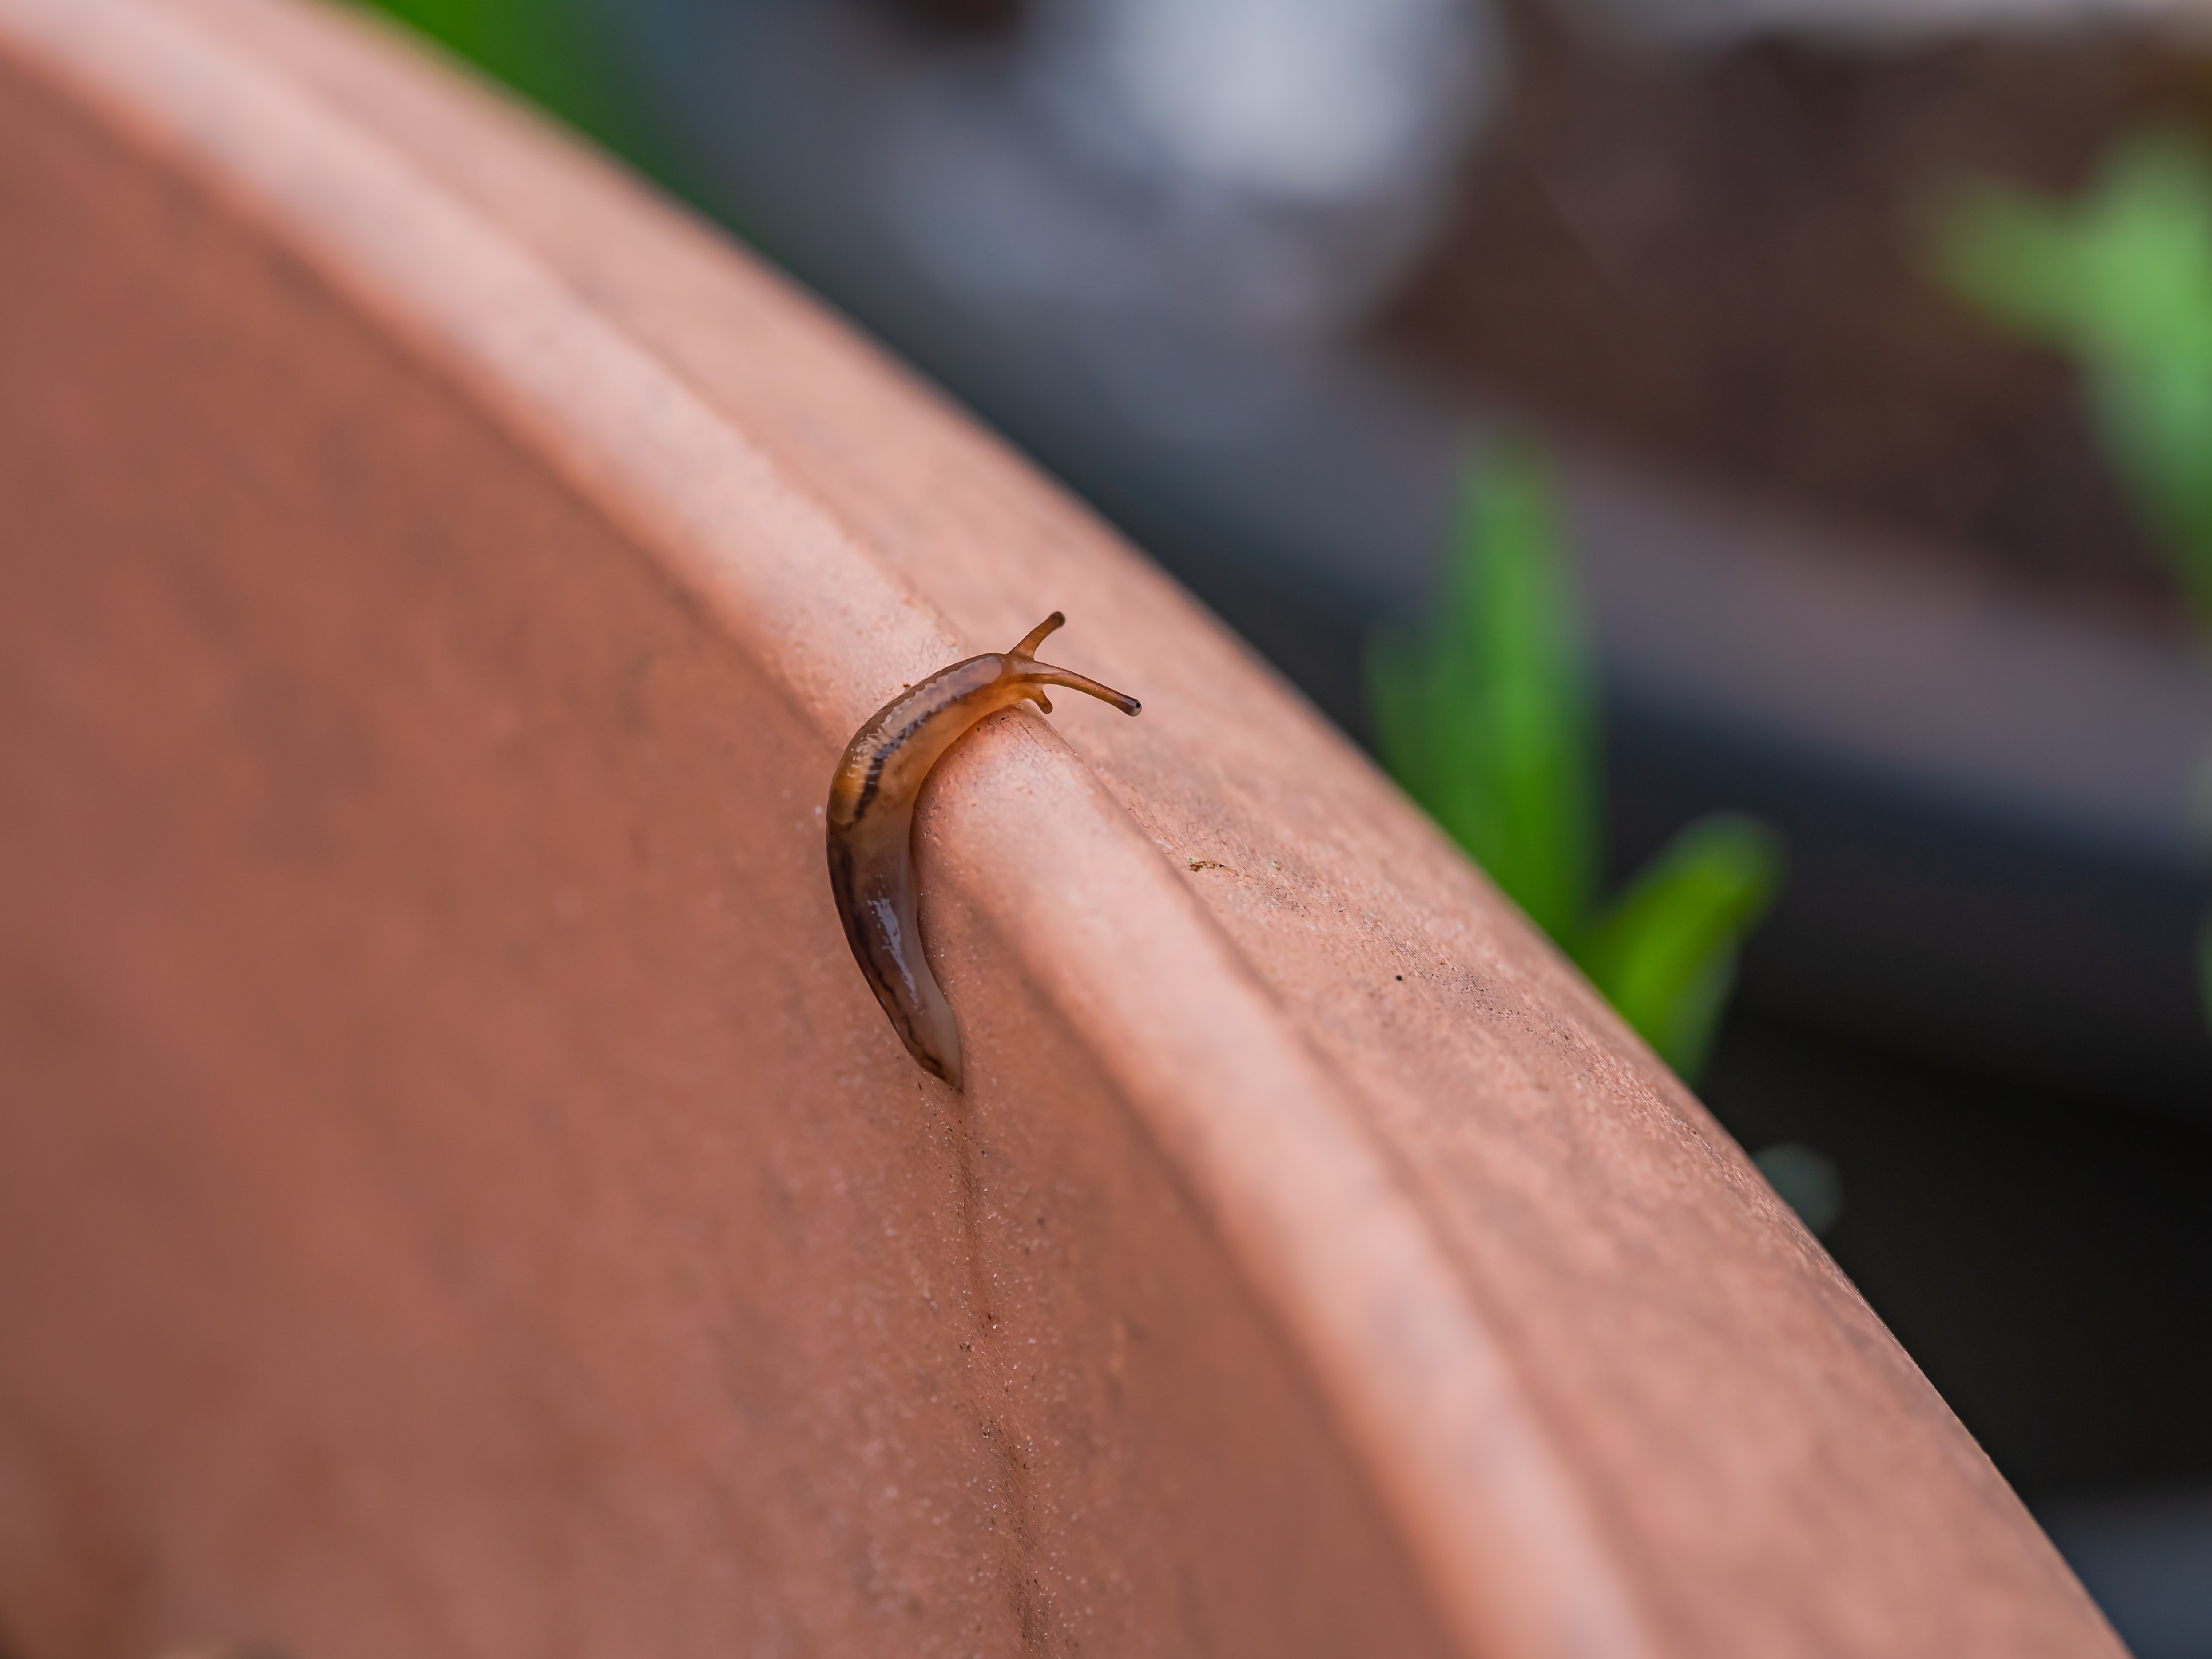 A slug crawling up the edge of a garden pot